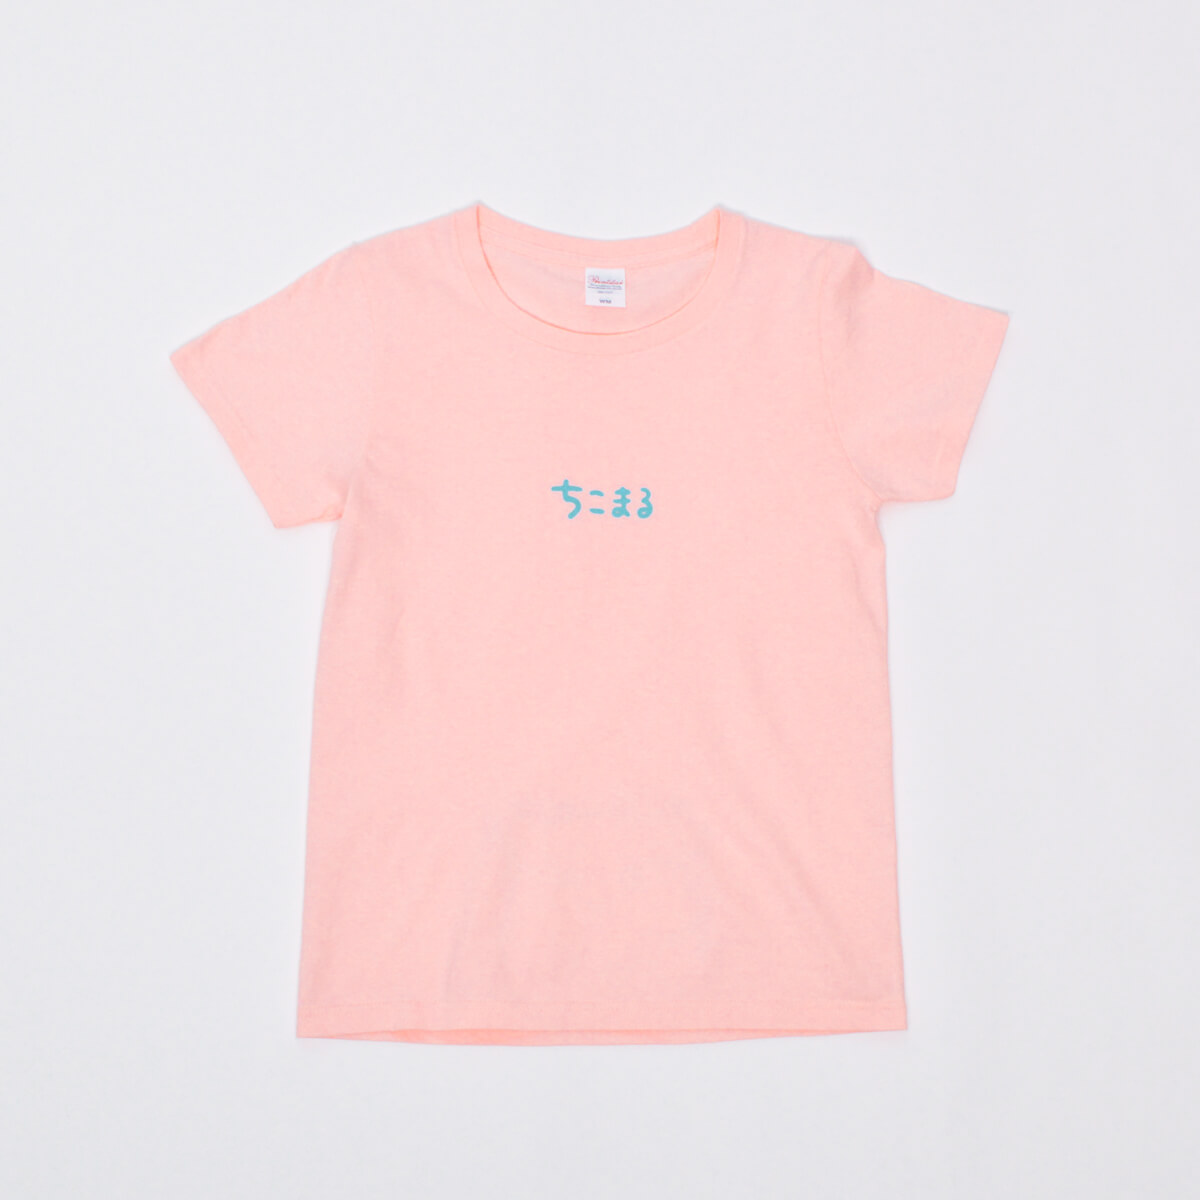 Tシャツ「ちこまる」ちこまるビクビク/ベビーピンク